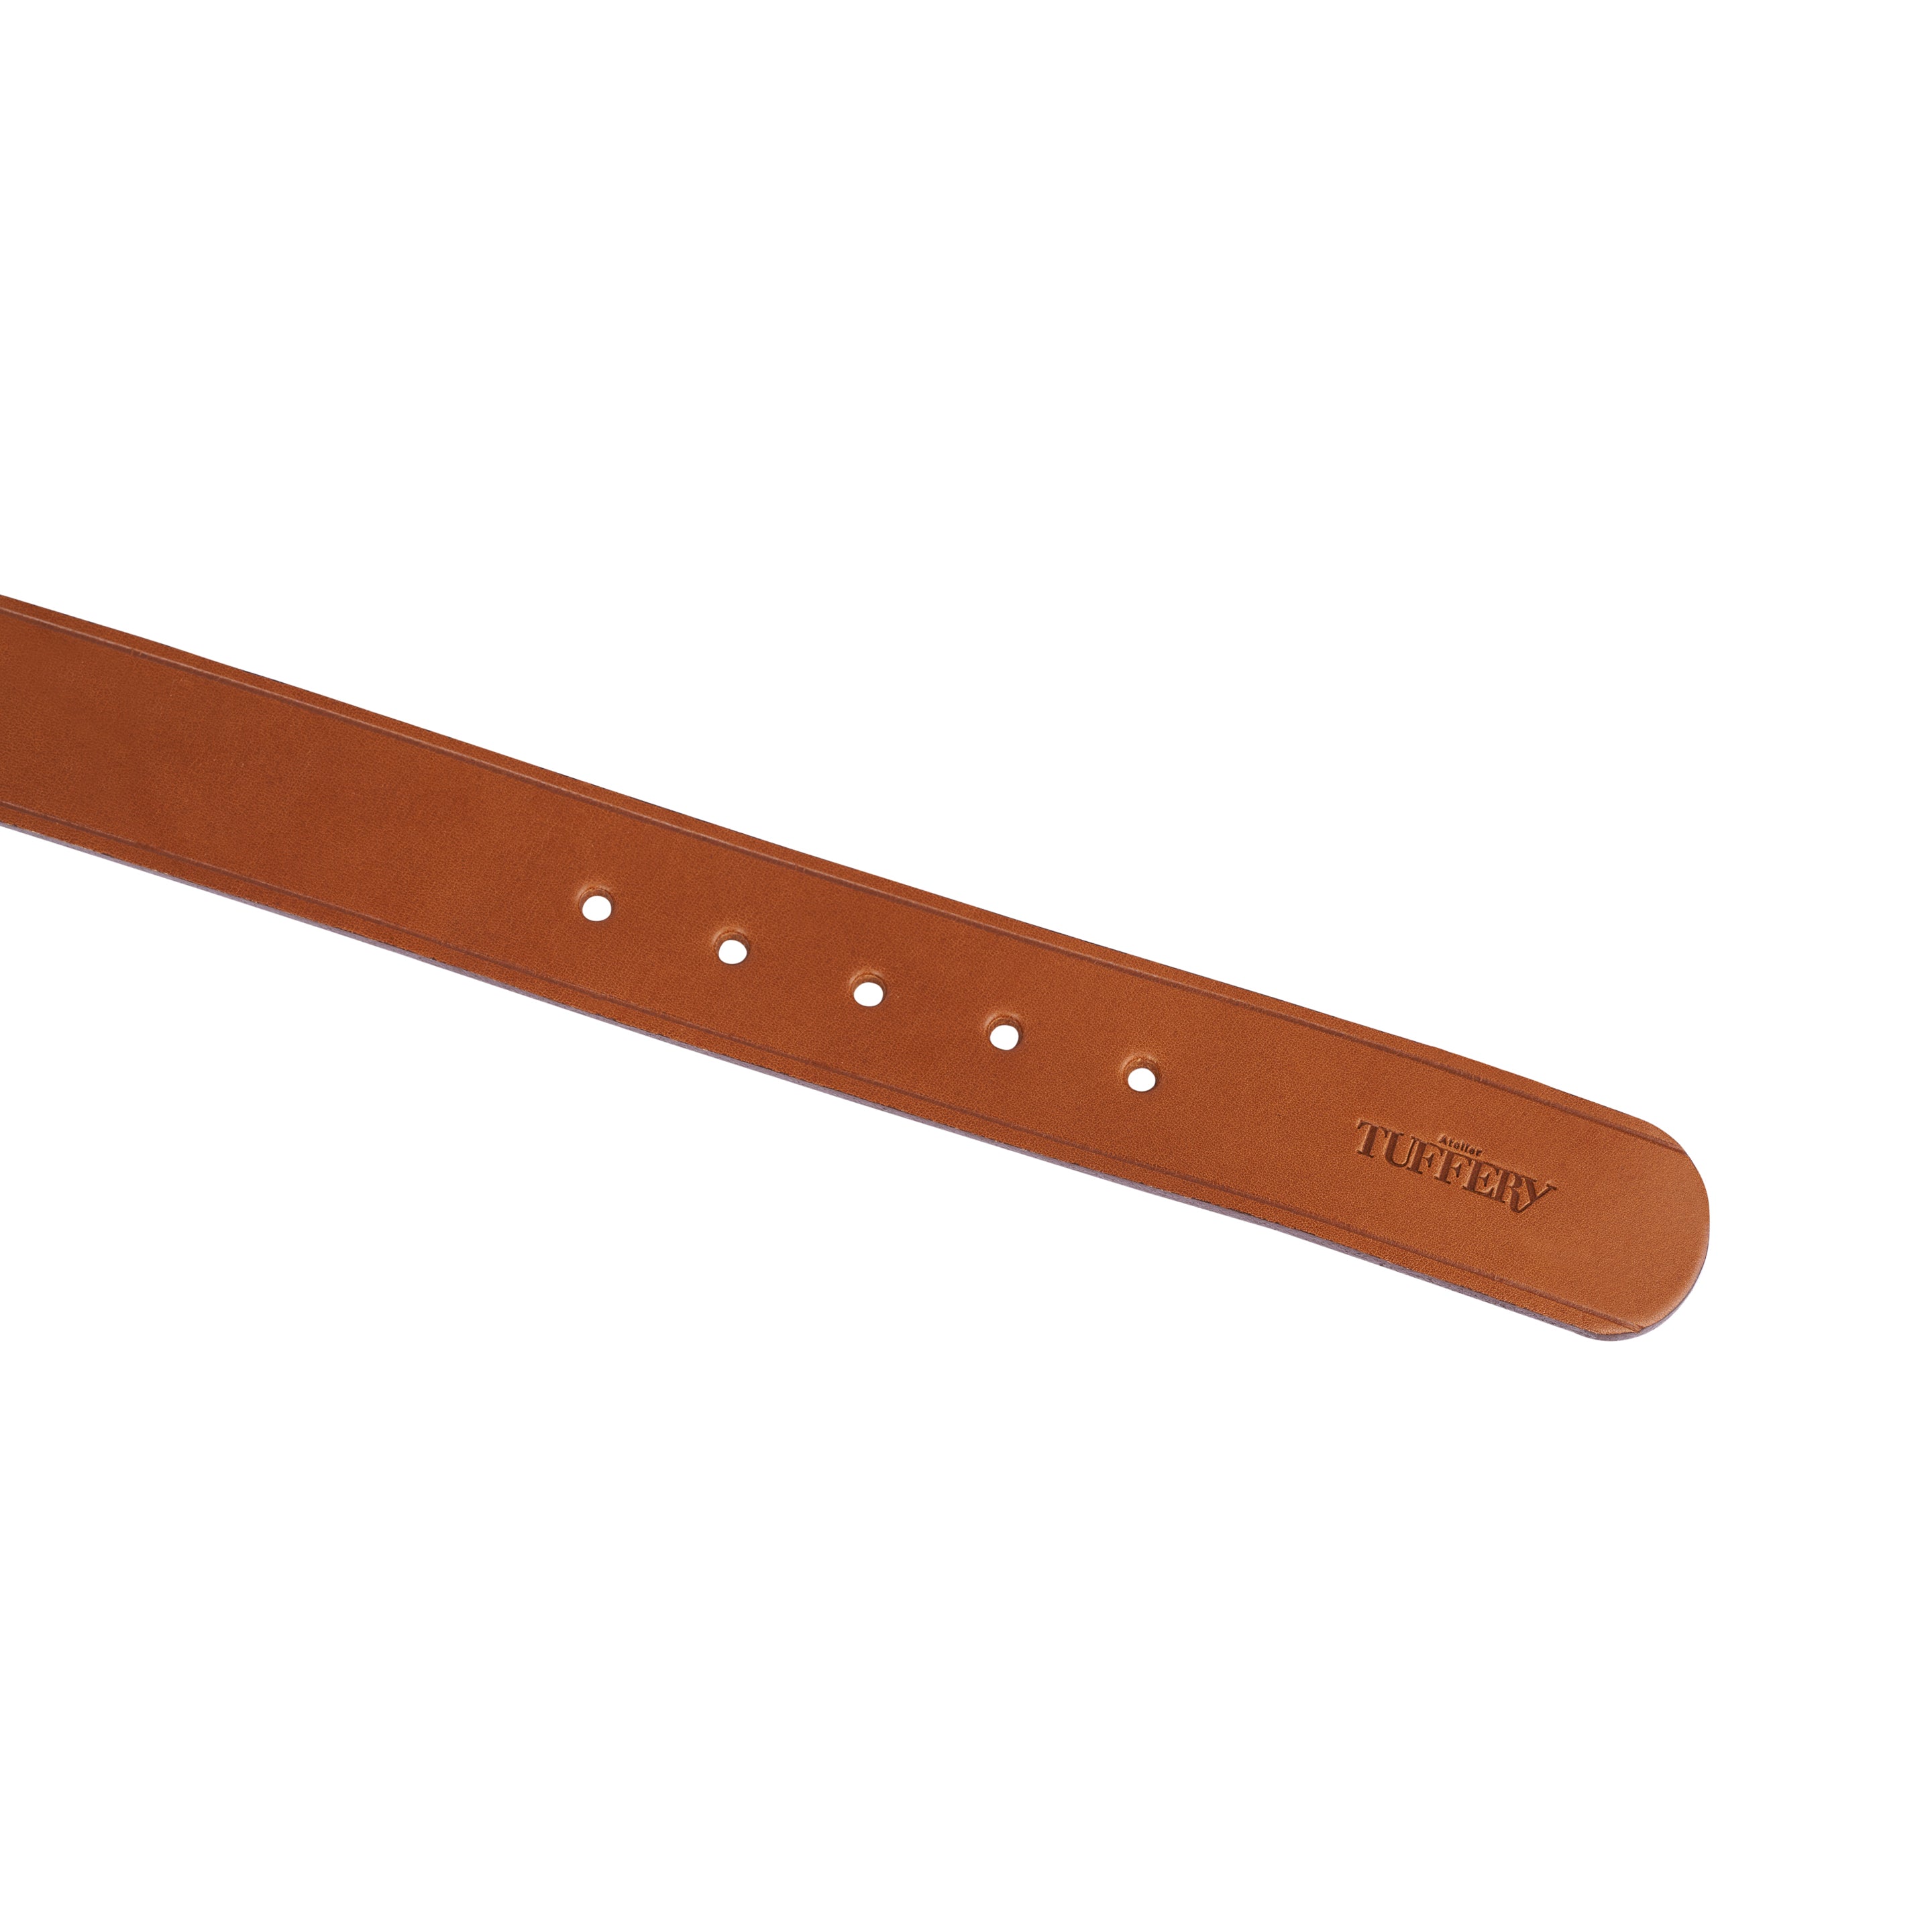 Leather belts made in France – Atelier Tuffery